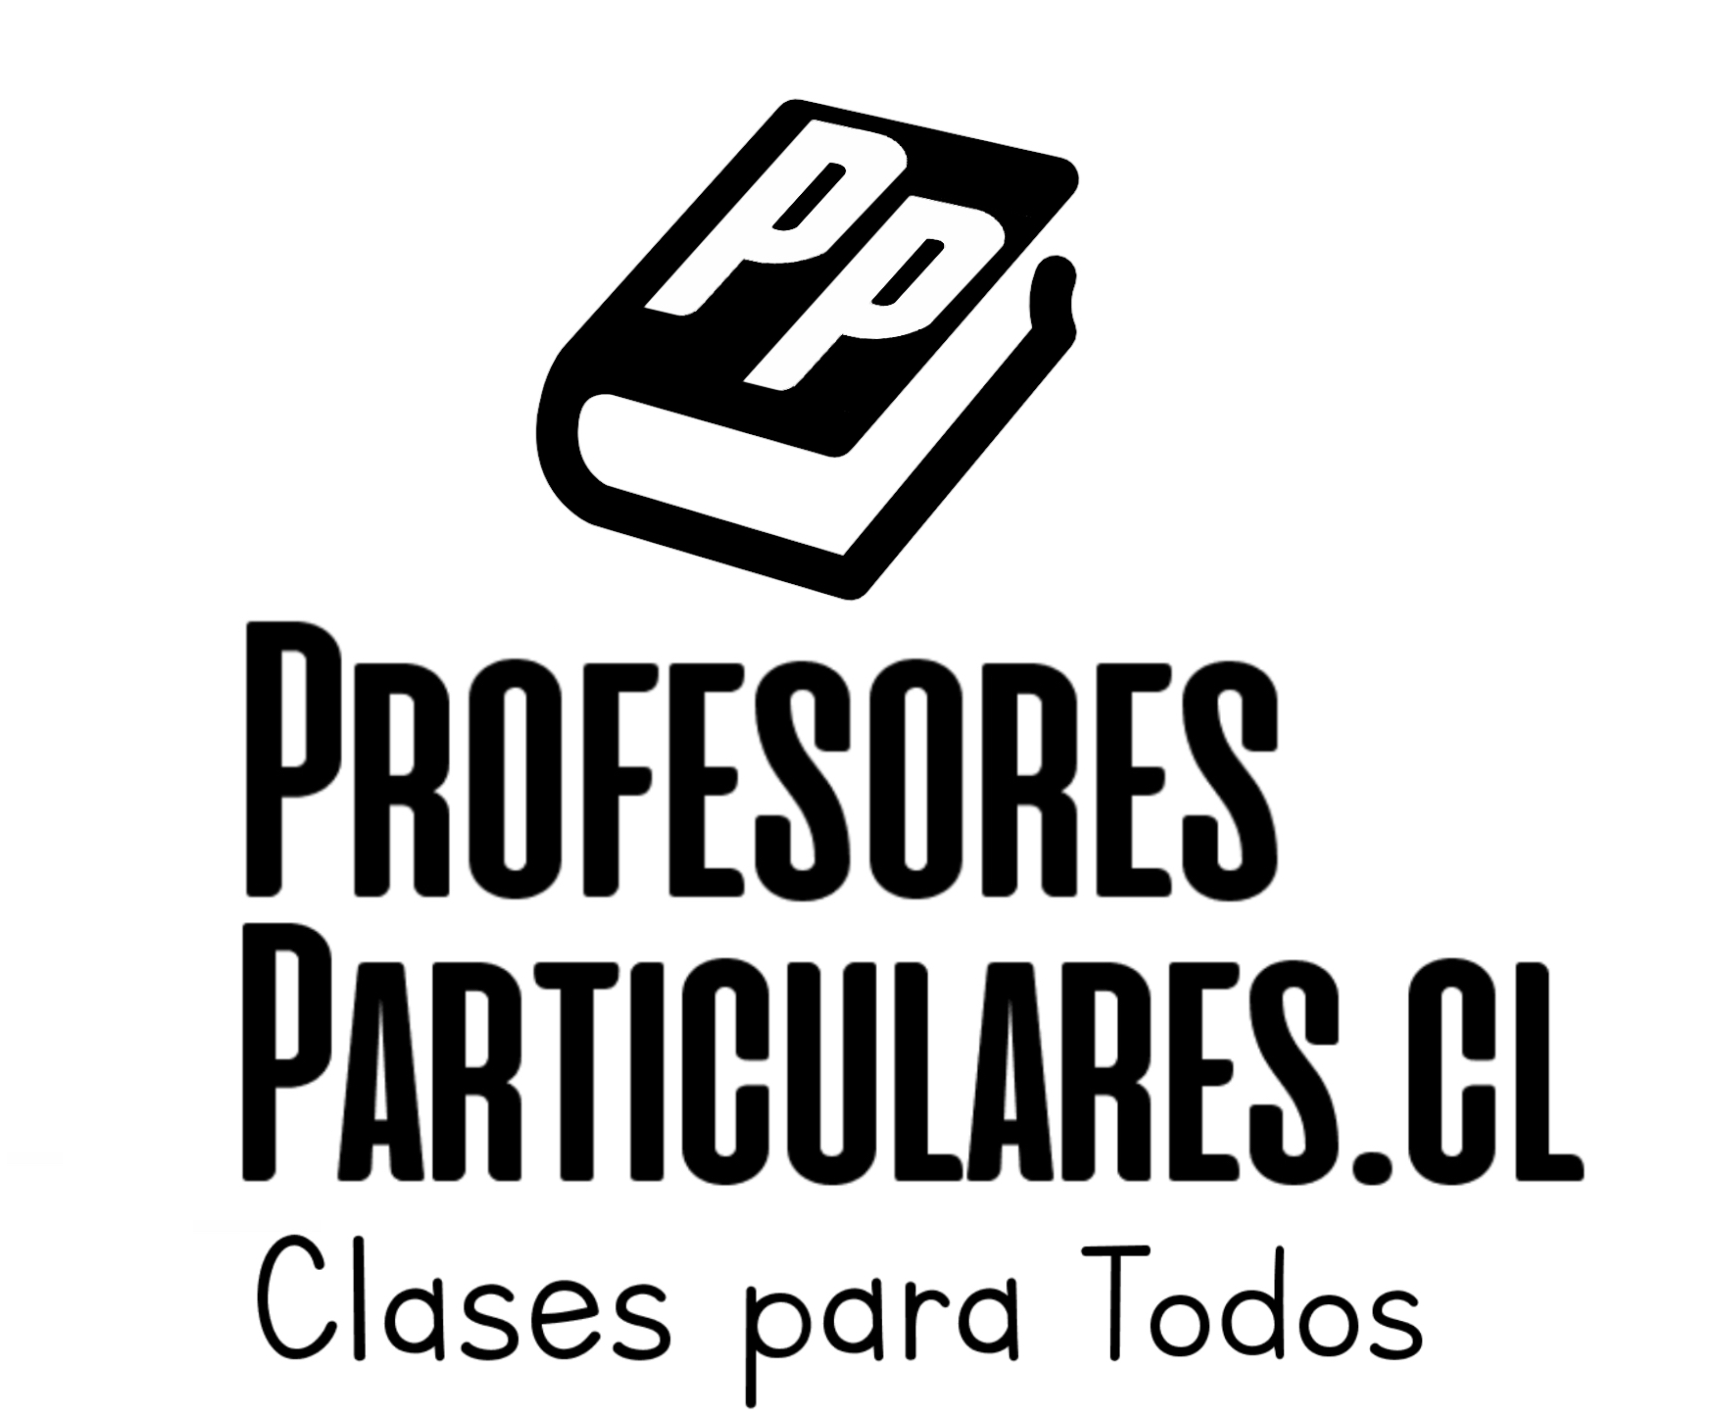 (c) Profesoresparticulares.cl